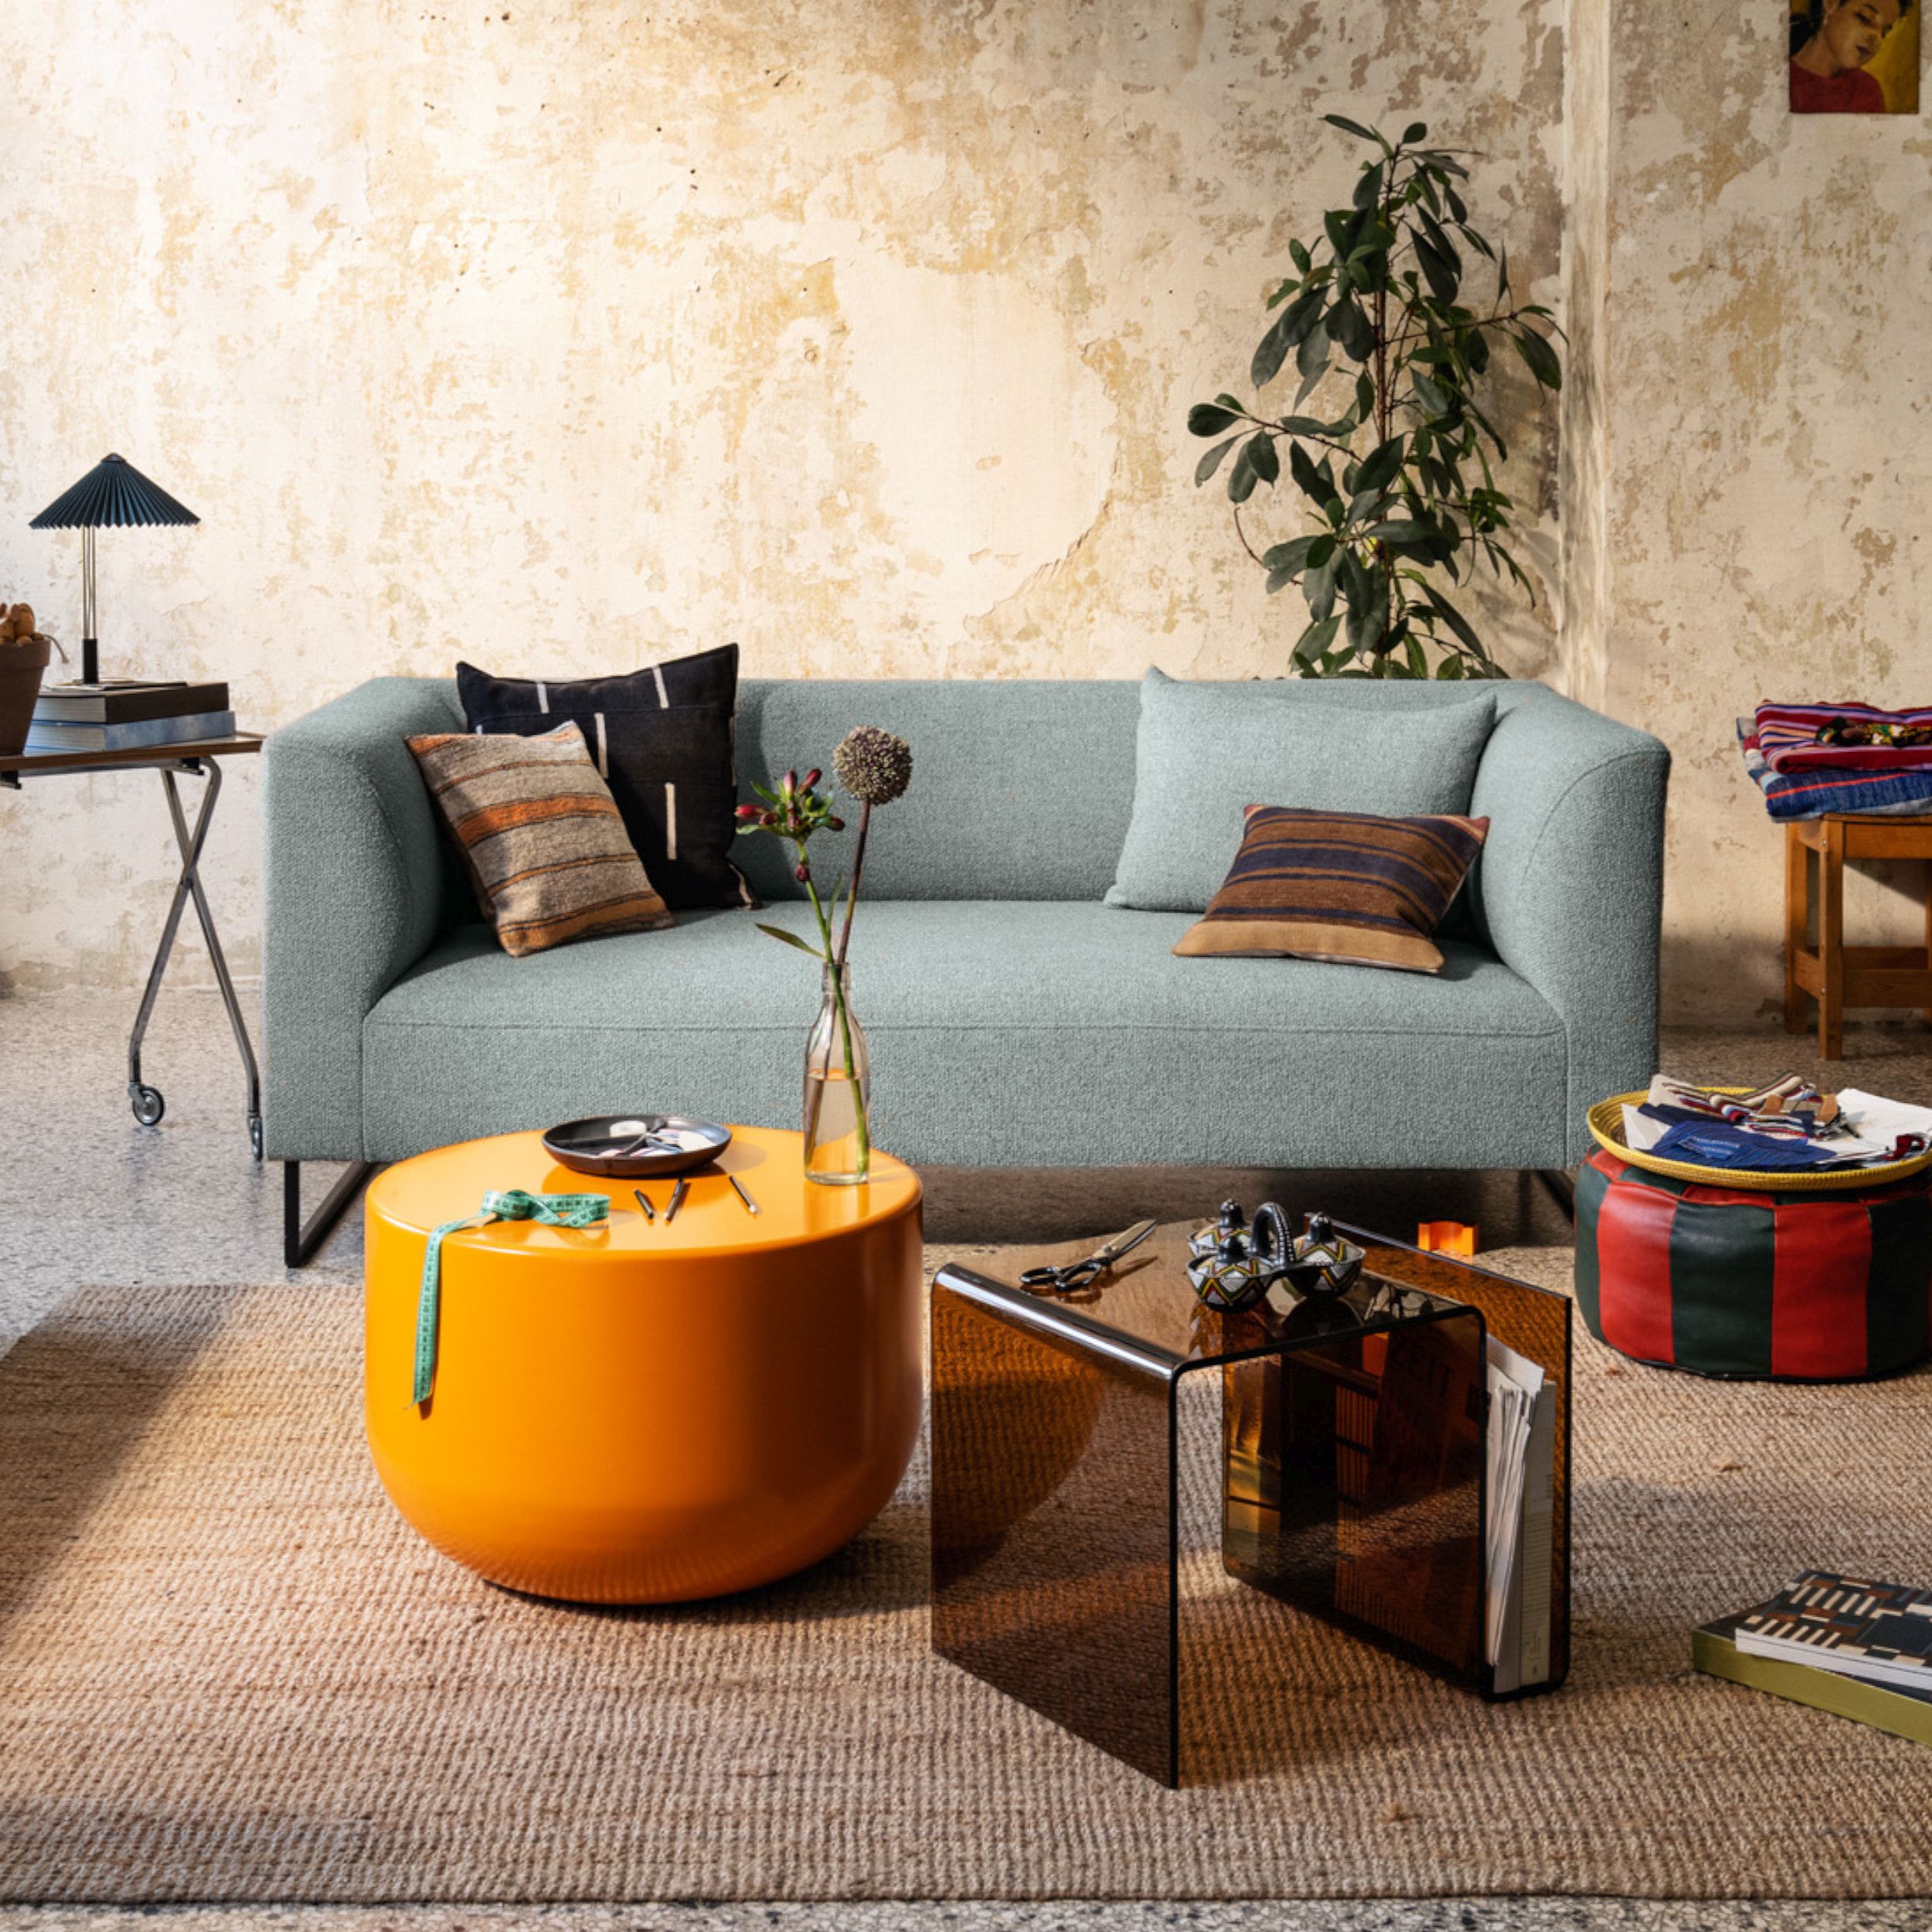 Sofa Collection Freistil 160 von Rolf Benz als Milieubild in grau